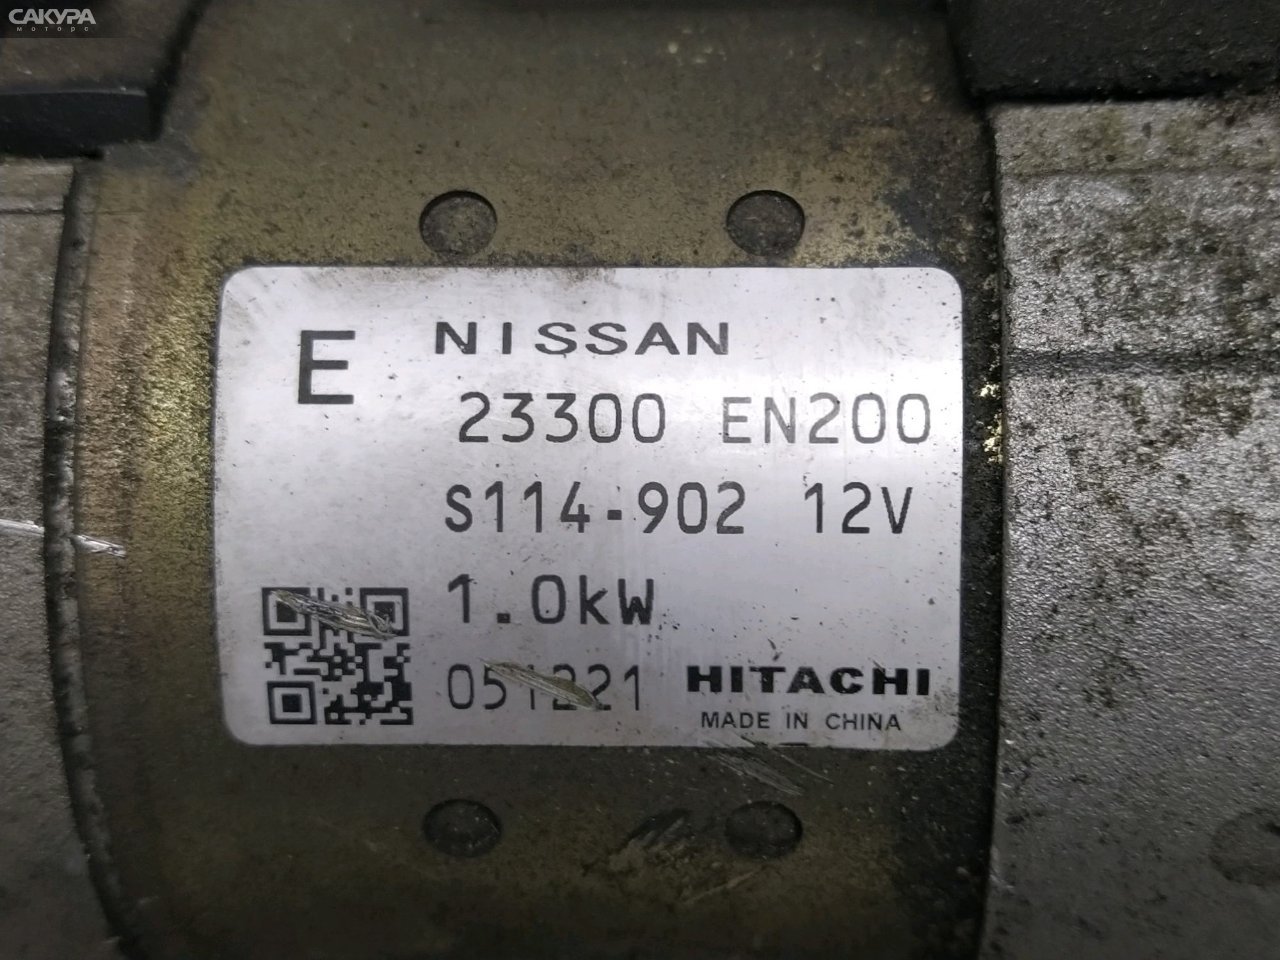 Стартер Nissan Wingroad JY12 MR18DE: купить в Сакура Моторс Красноярск.